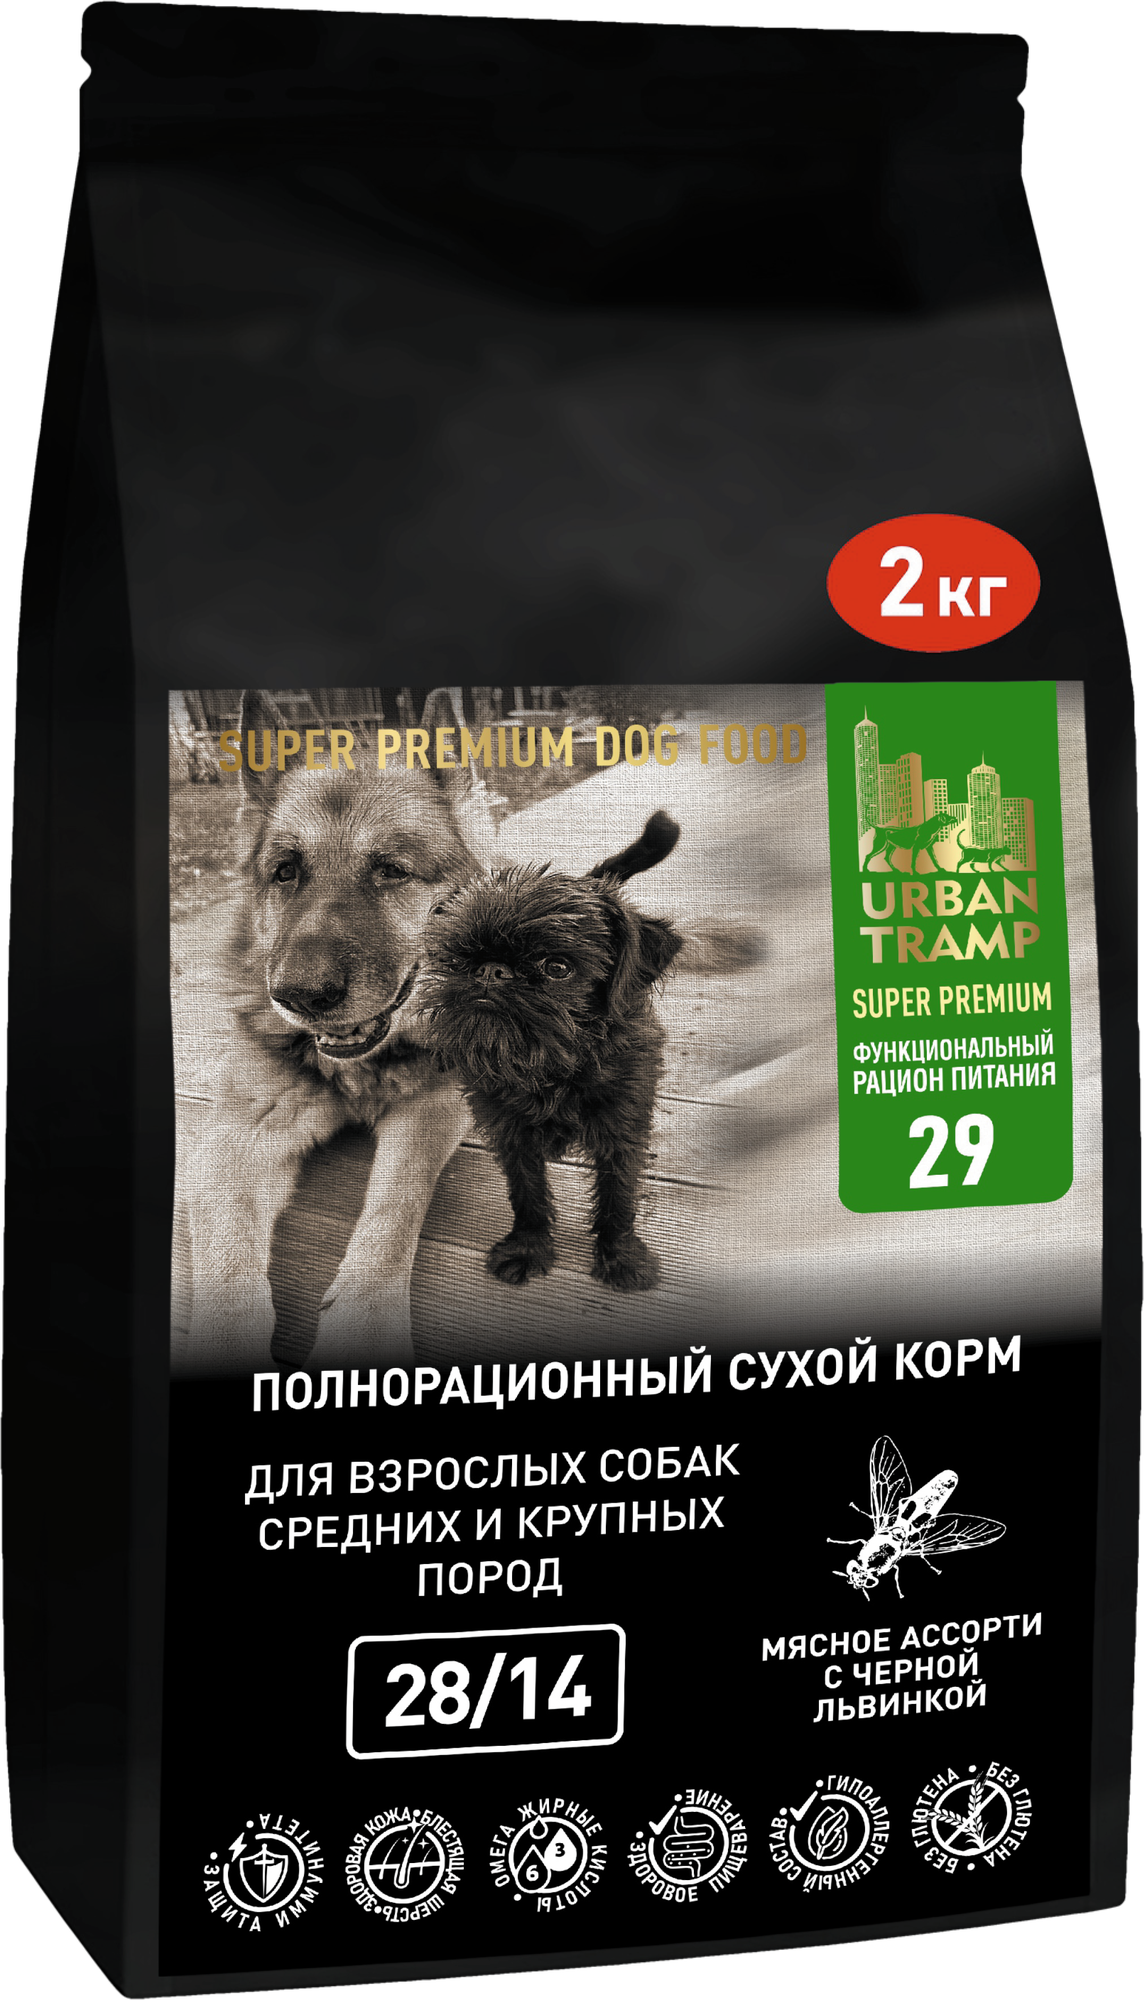 URBAN TRAMP - Сухой корм «SUPER PREMIUM» класса мясное ассорти с энтомопротеином (черная львинка) для взрослых собак средних и крупных пород.